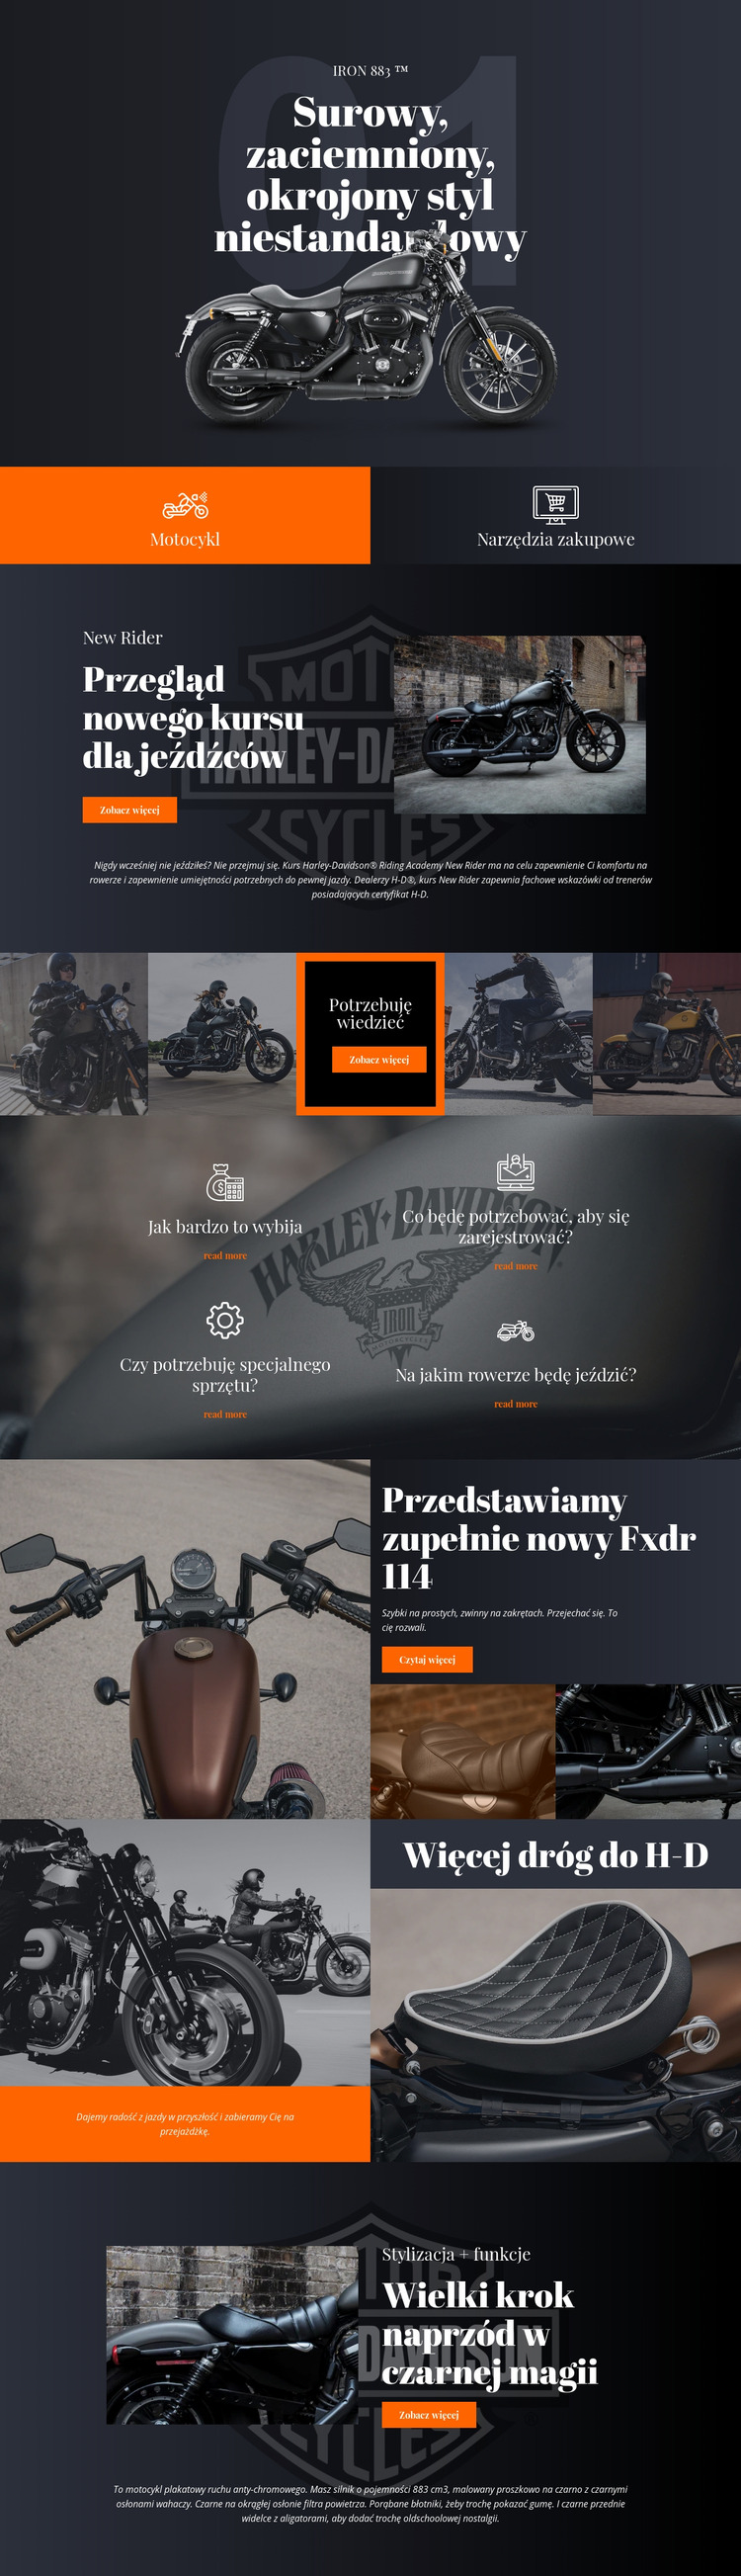 Harley Davidson Szablon Joomla